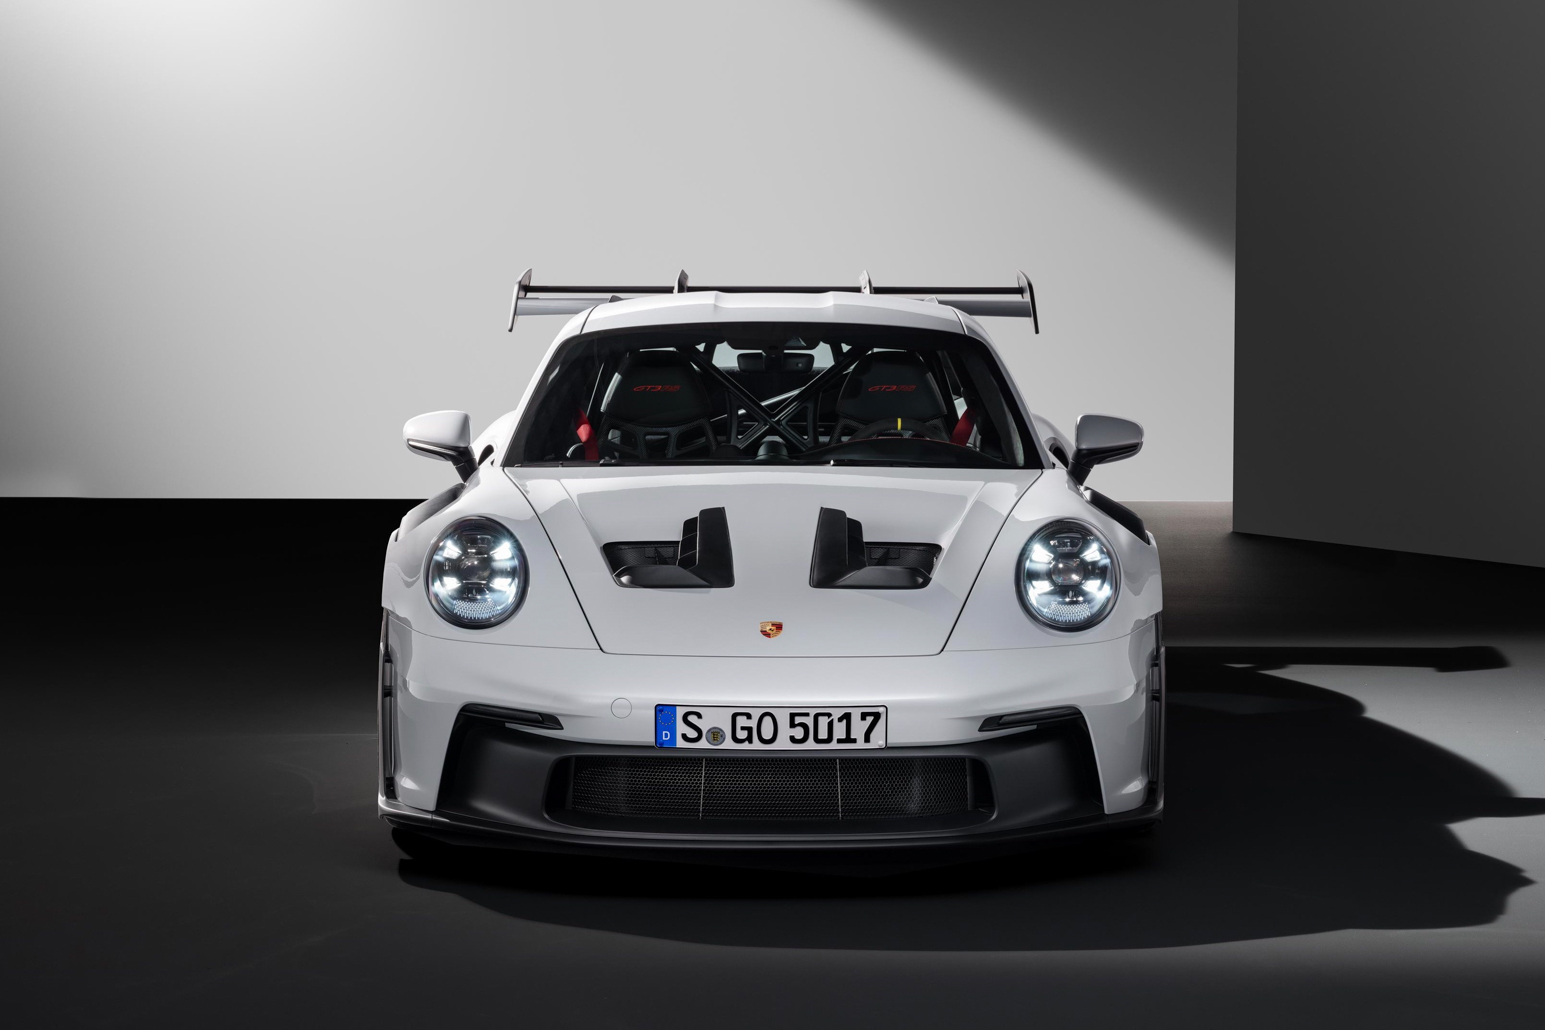 Chi tiết Porsche 911 GT3 RS thế hệ mới - ảnh 4